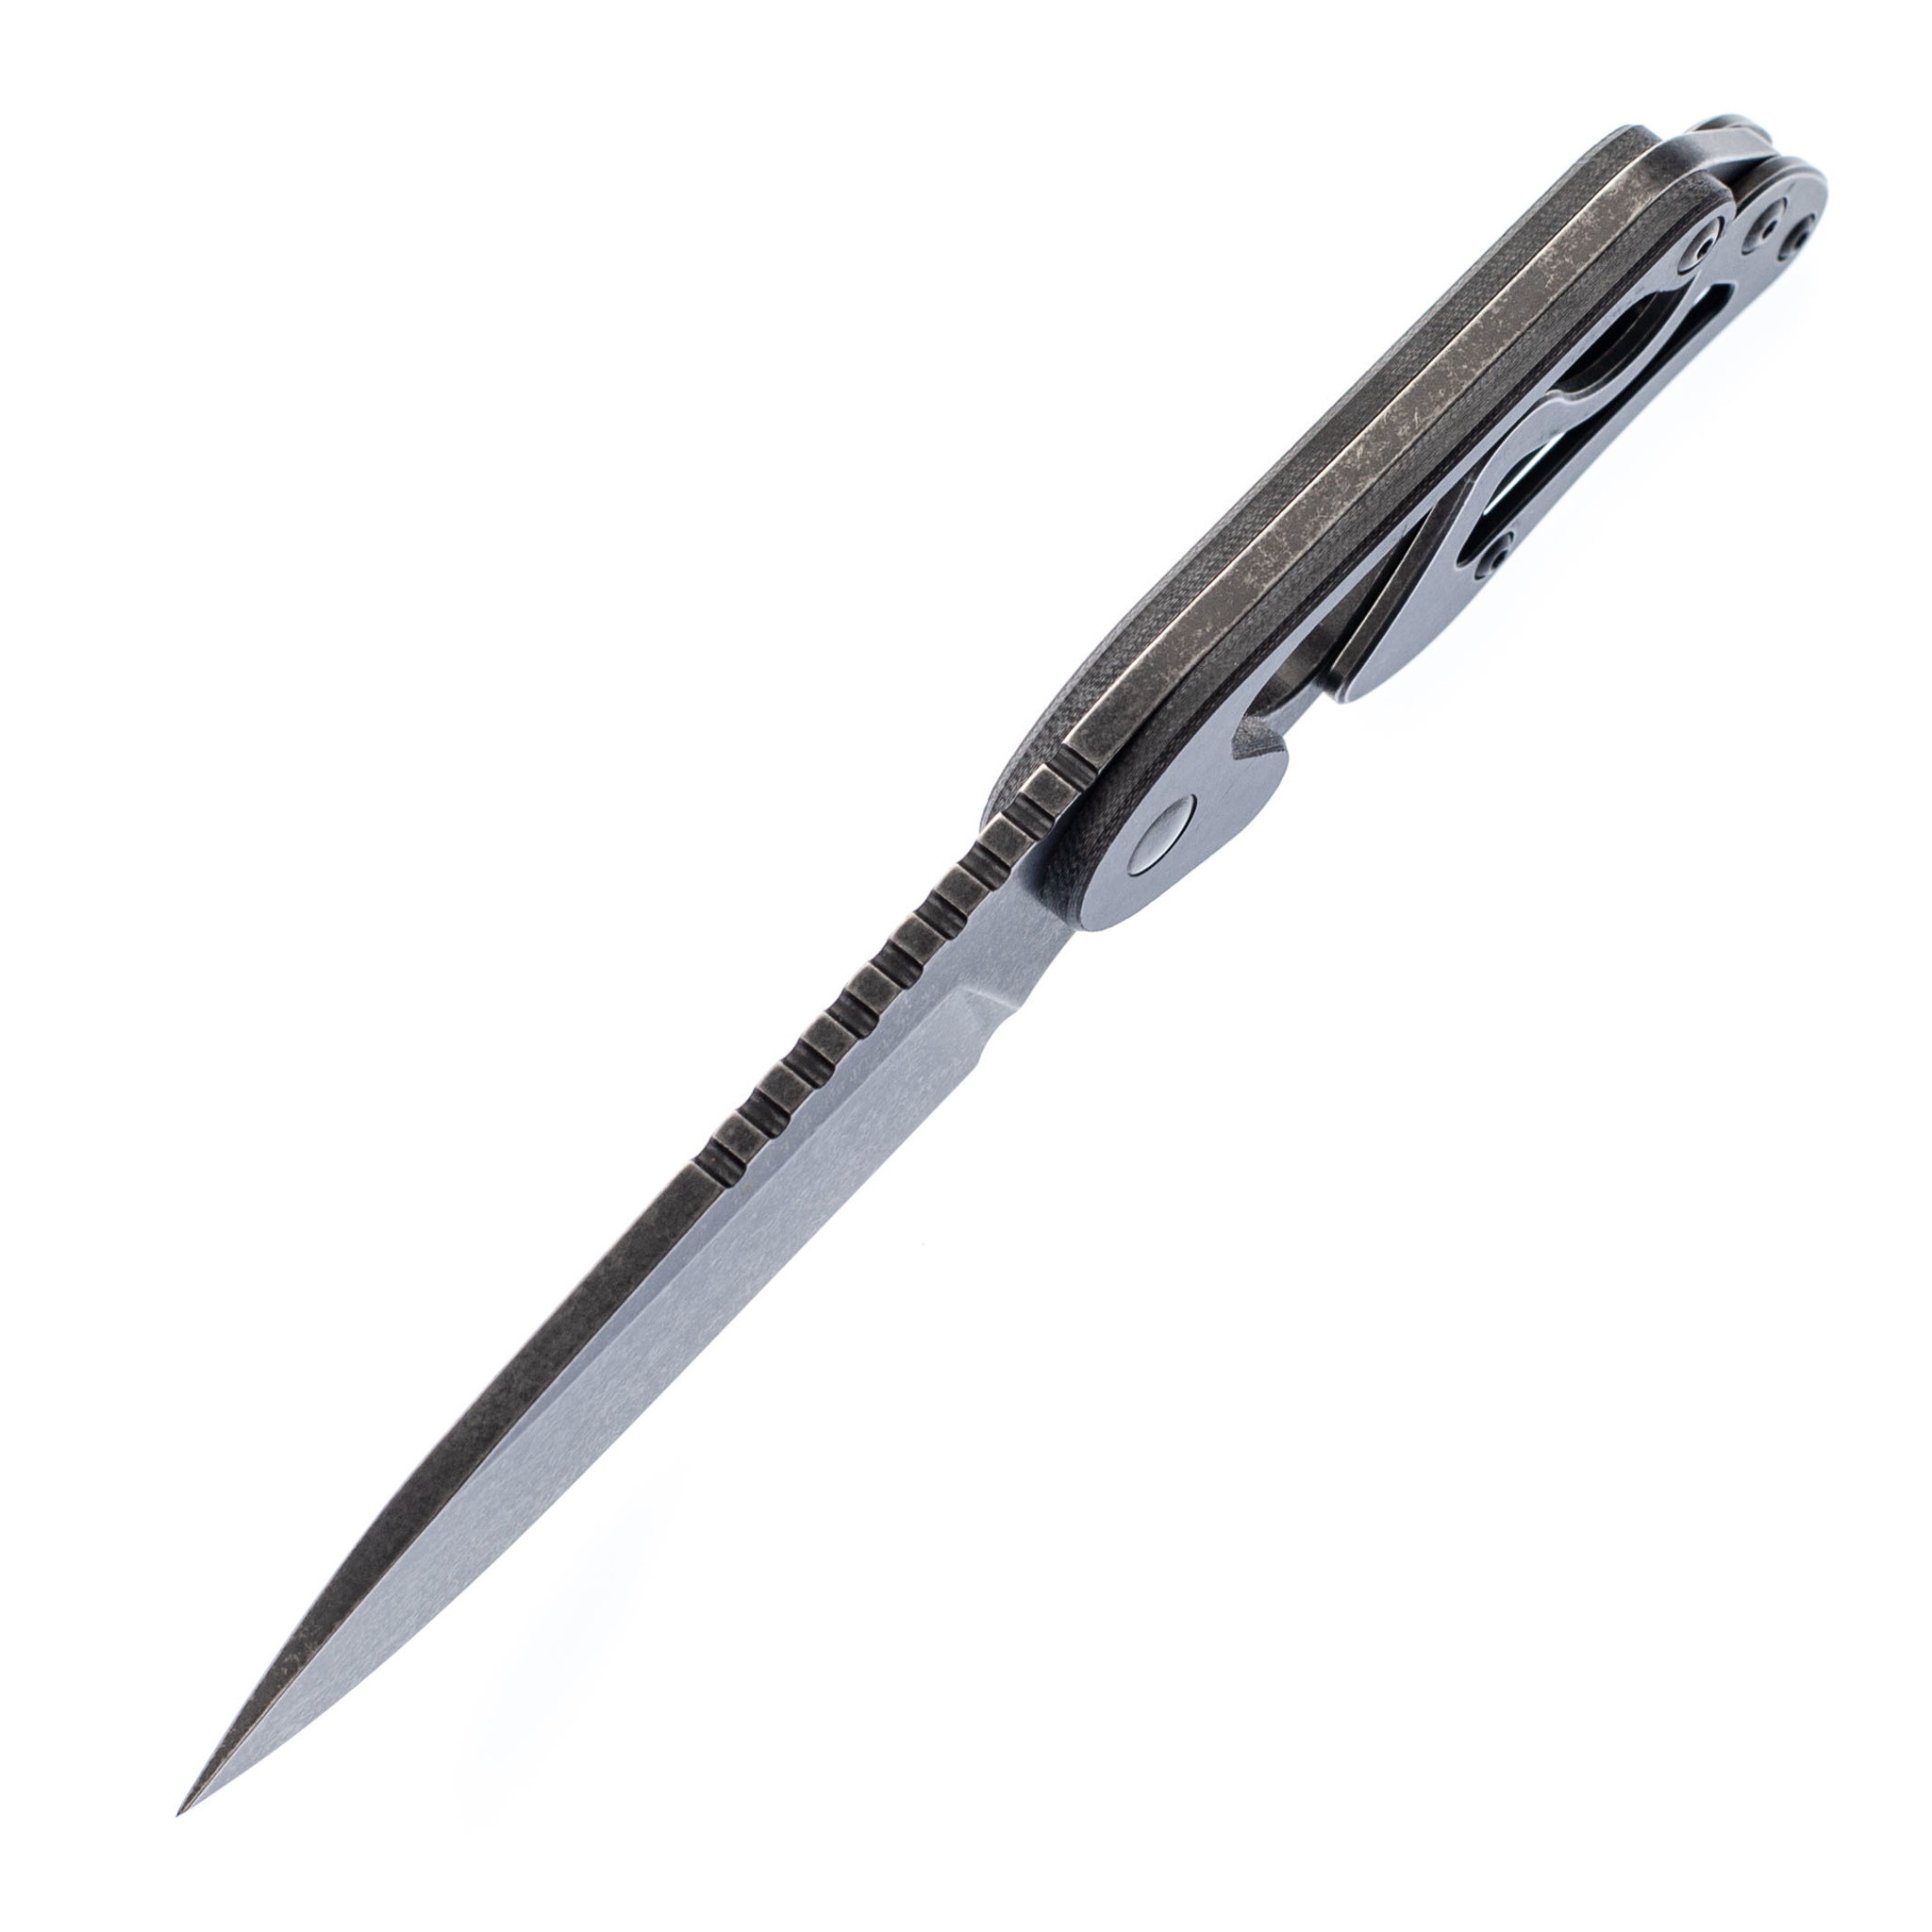 Шейный нож Cormorant Apex Blackwash Realsteel, сталь 14C28N - фото 4